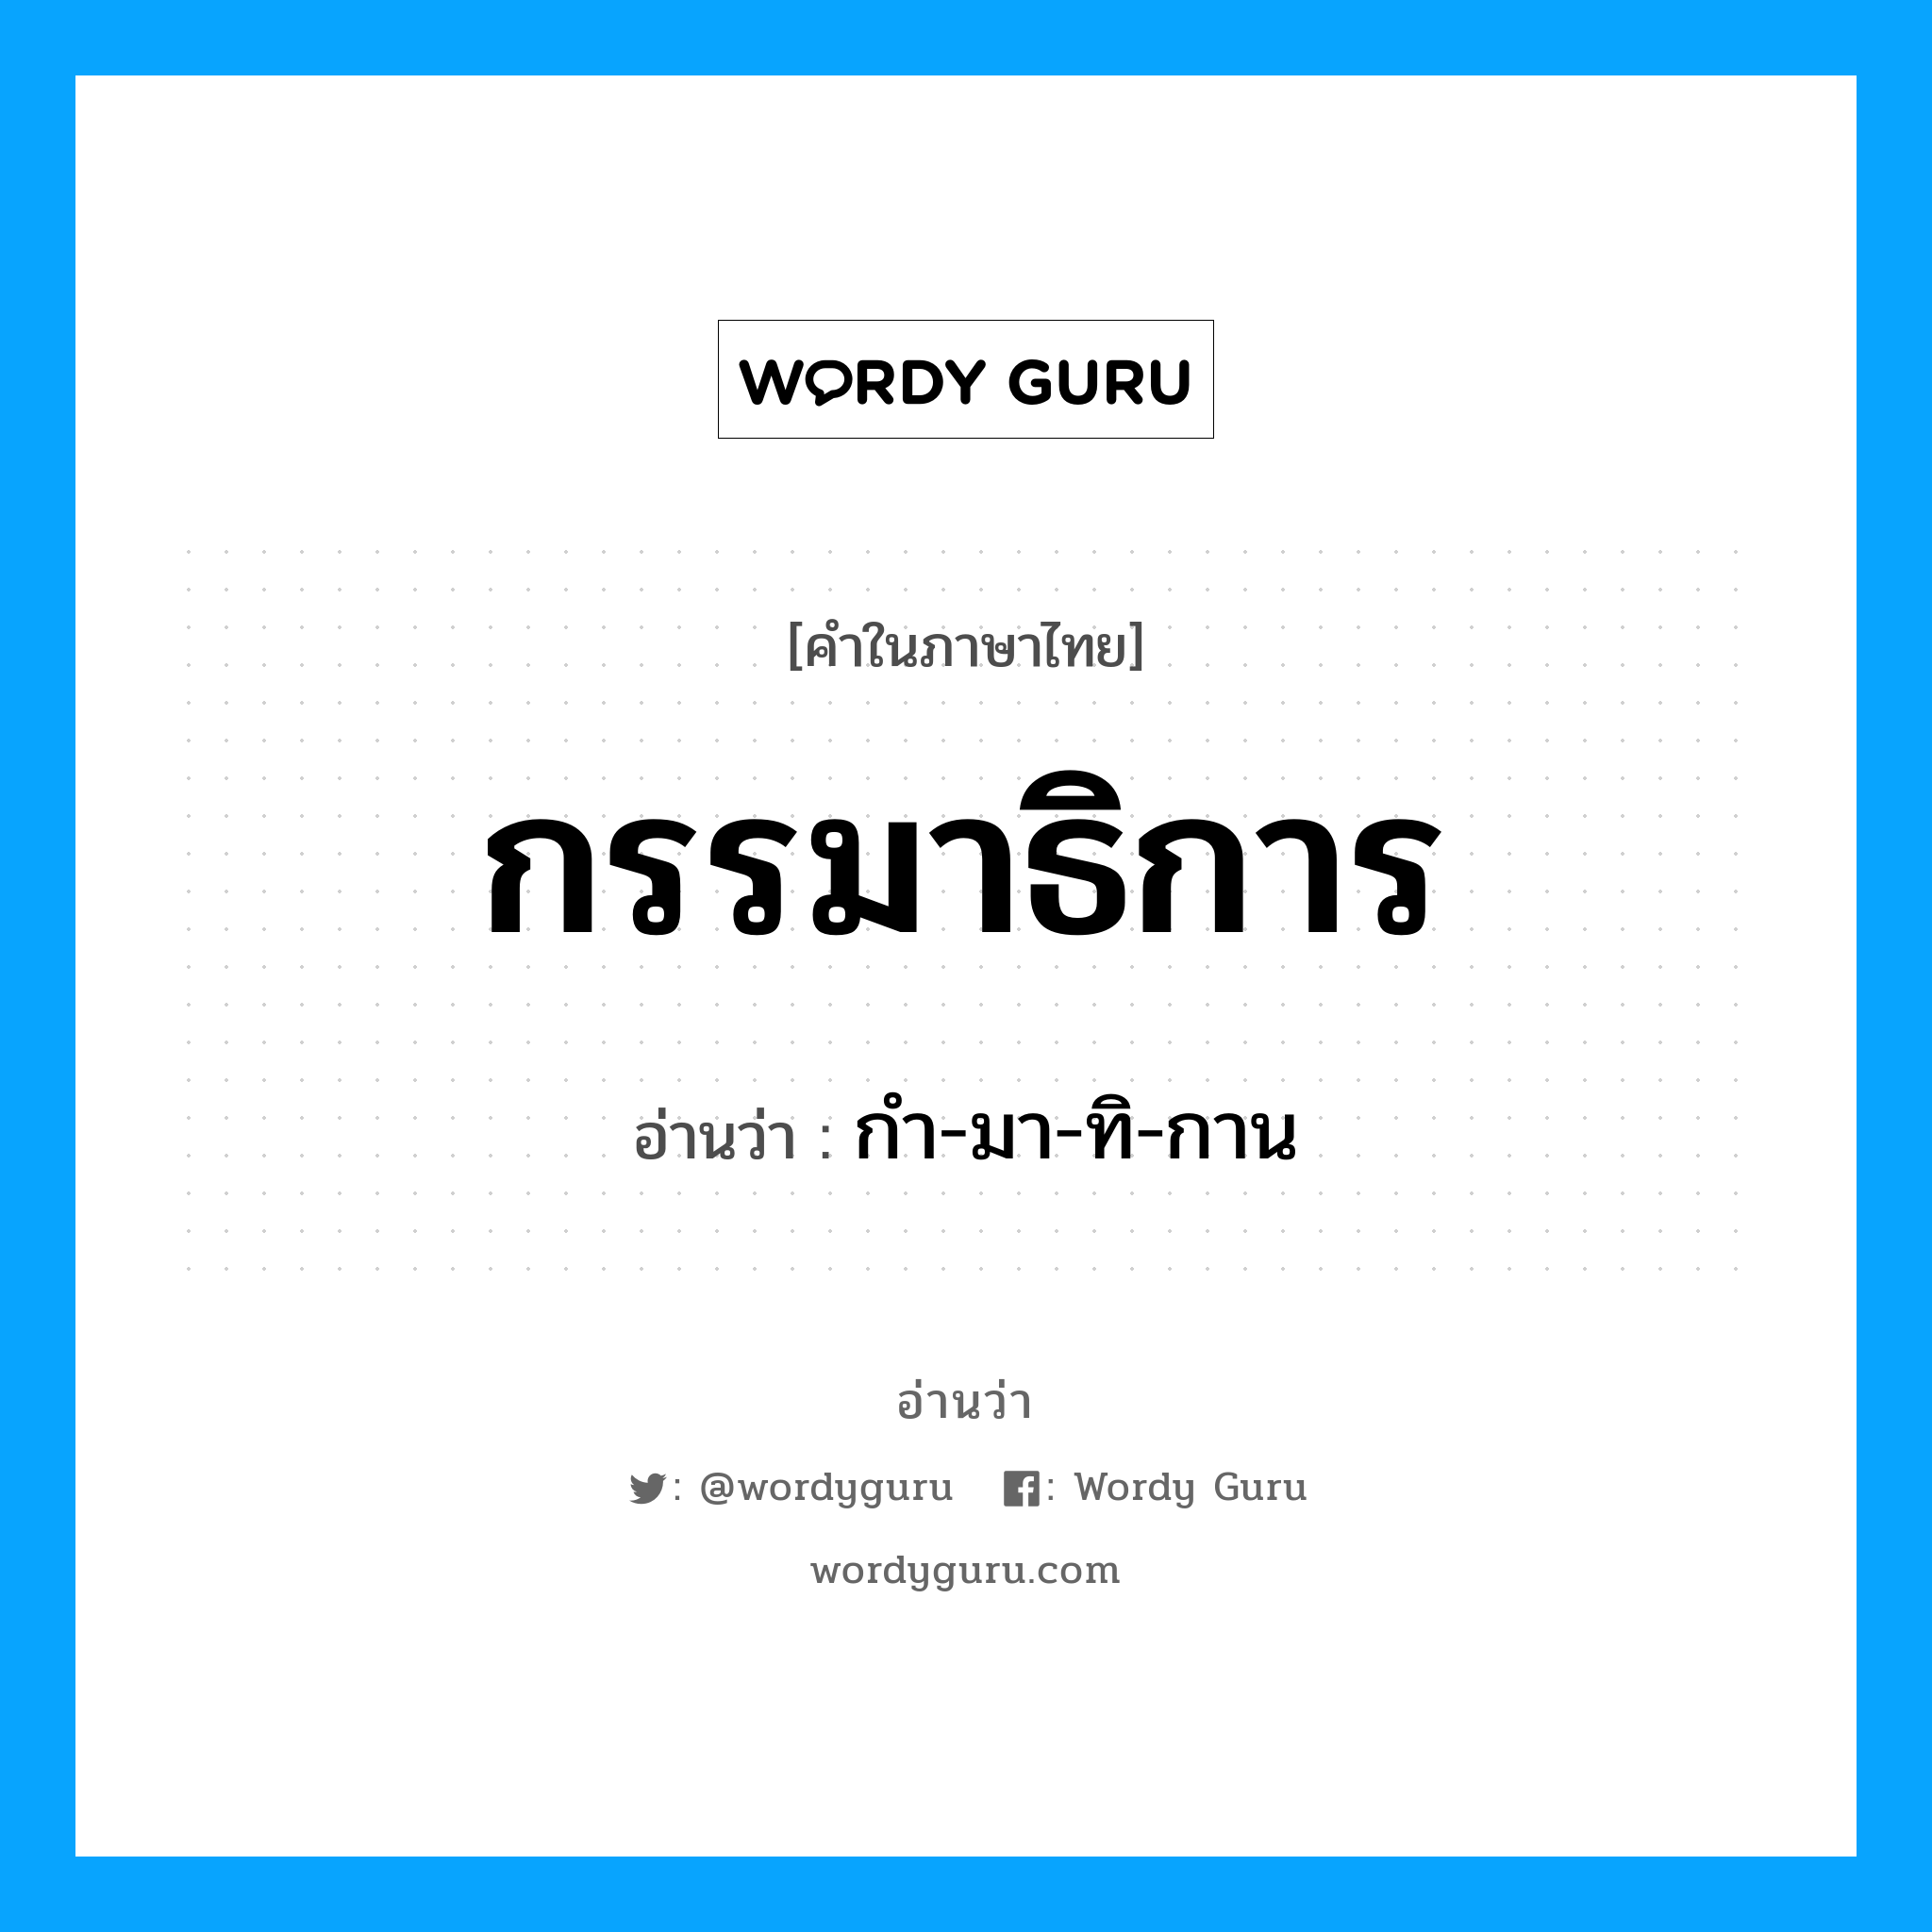 กํา-มา-ทิ-กาน เป็นคำอ่านของคำไหน?, คำในภาษาไทย กํา-มา-ทิ-กาน อ่านว่า กรรมาธิการ